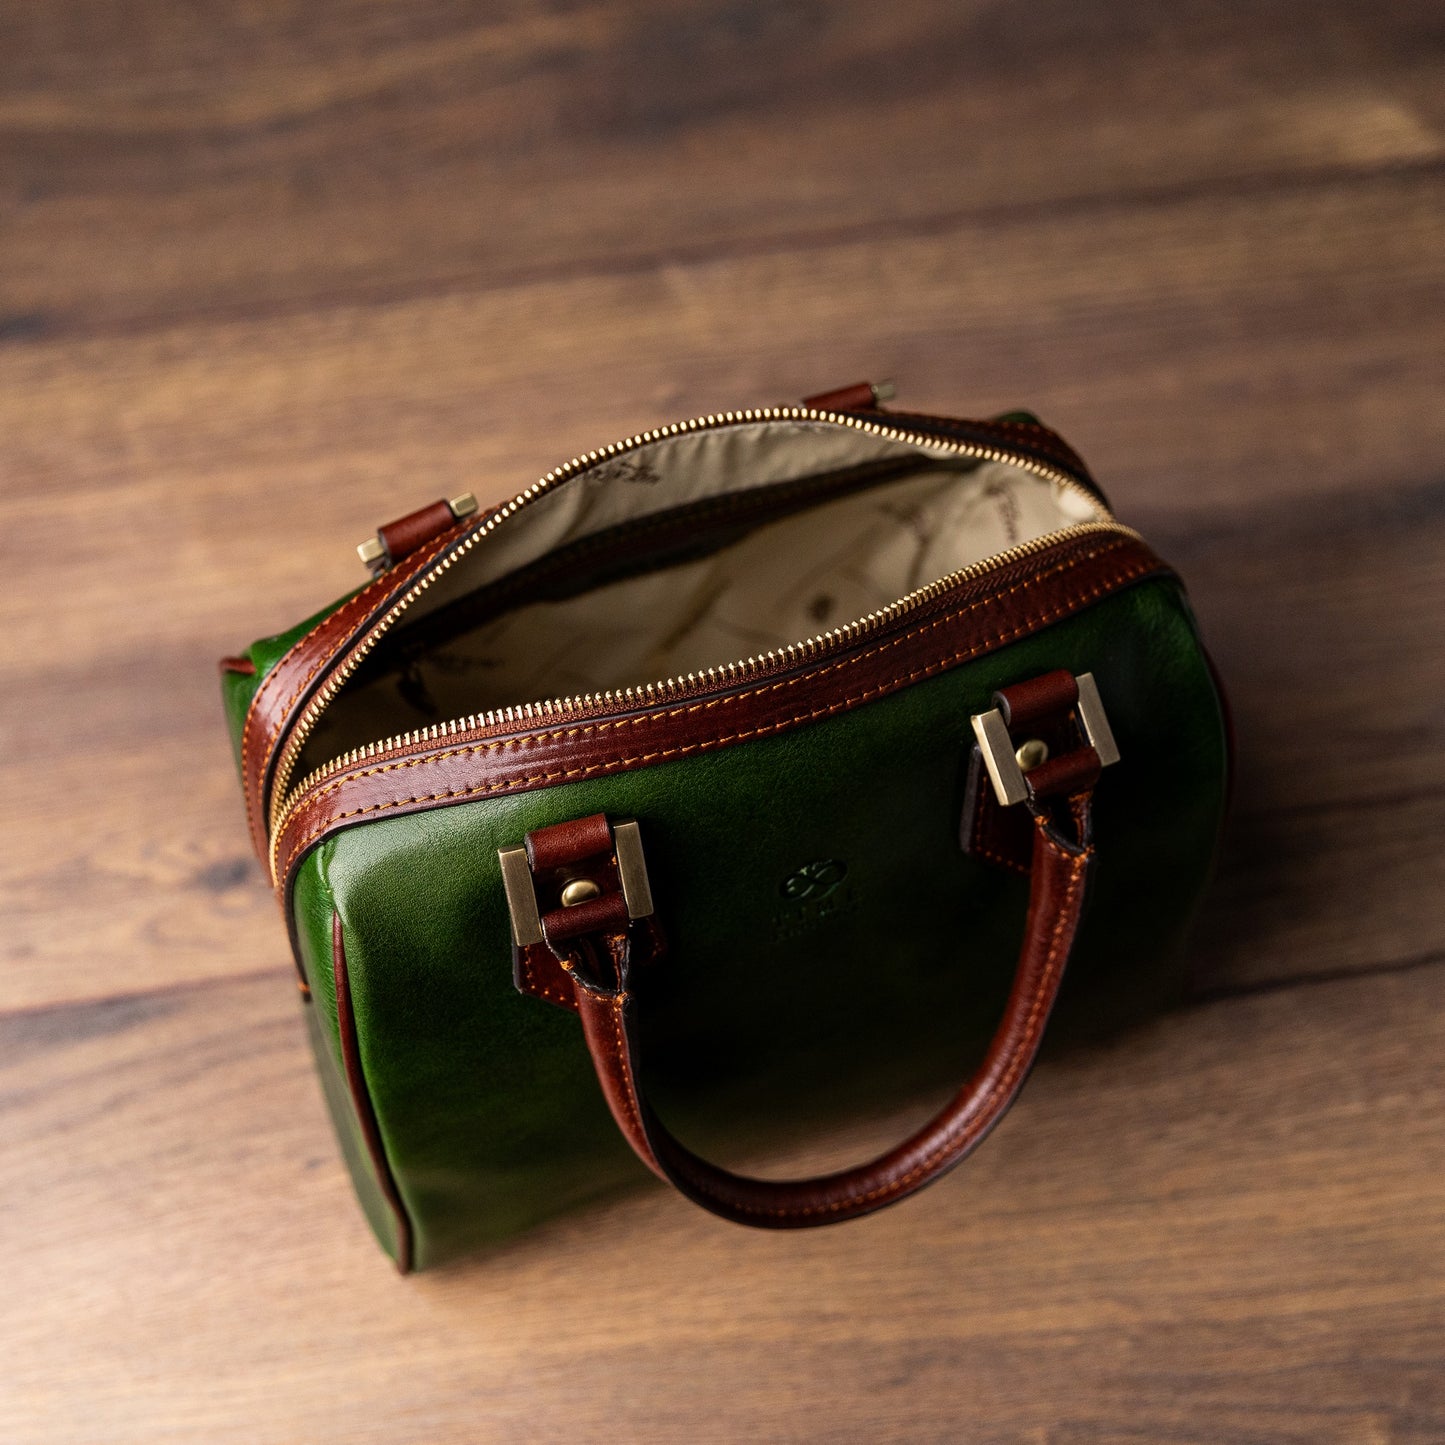 Leather Handbag Shoulder Bag - Little Dorrit